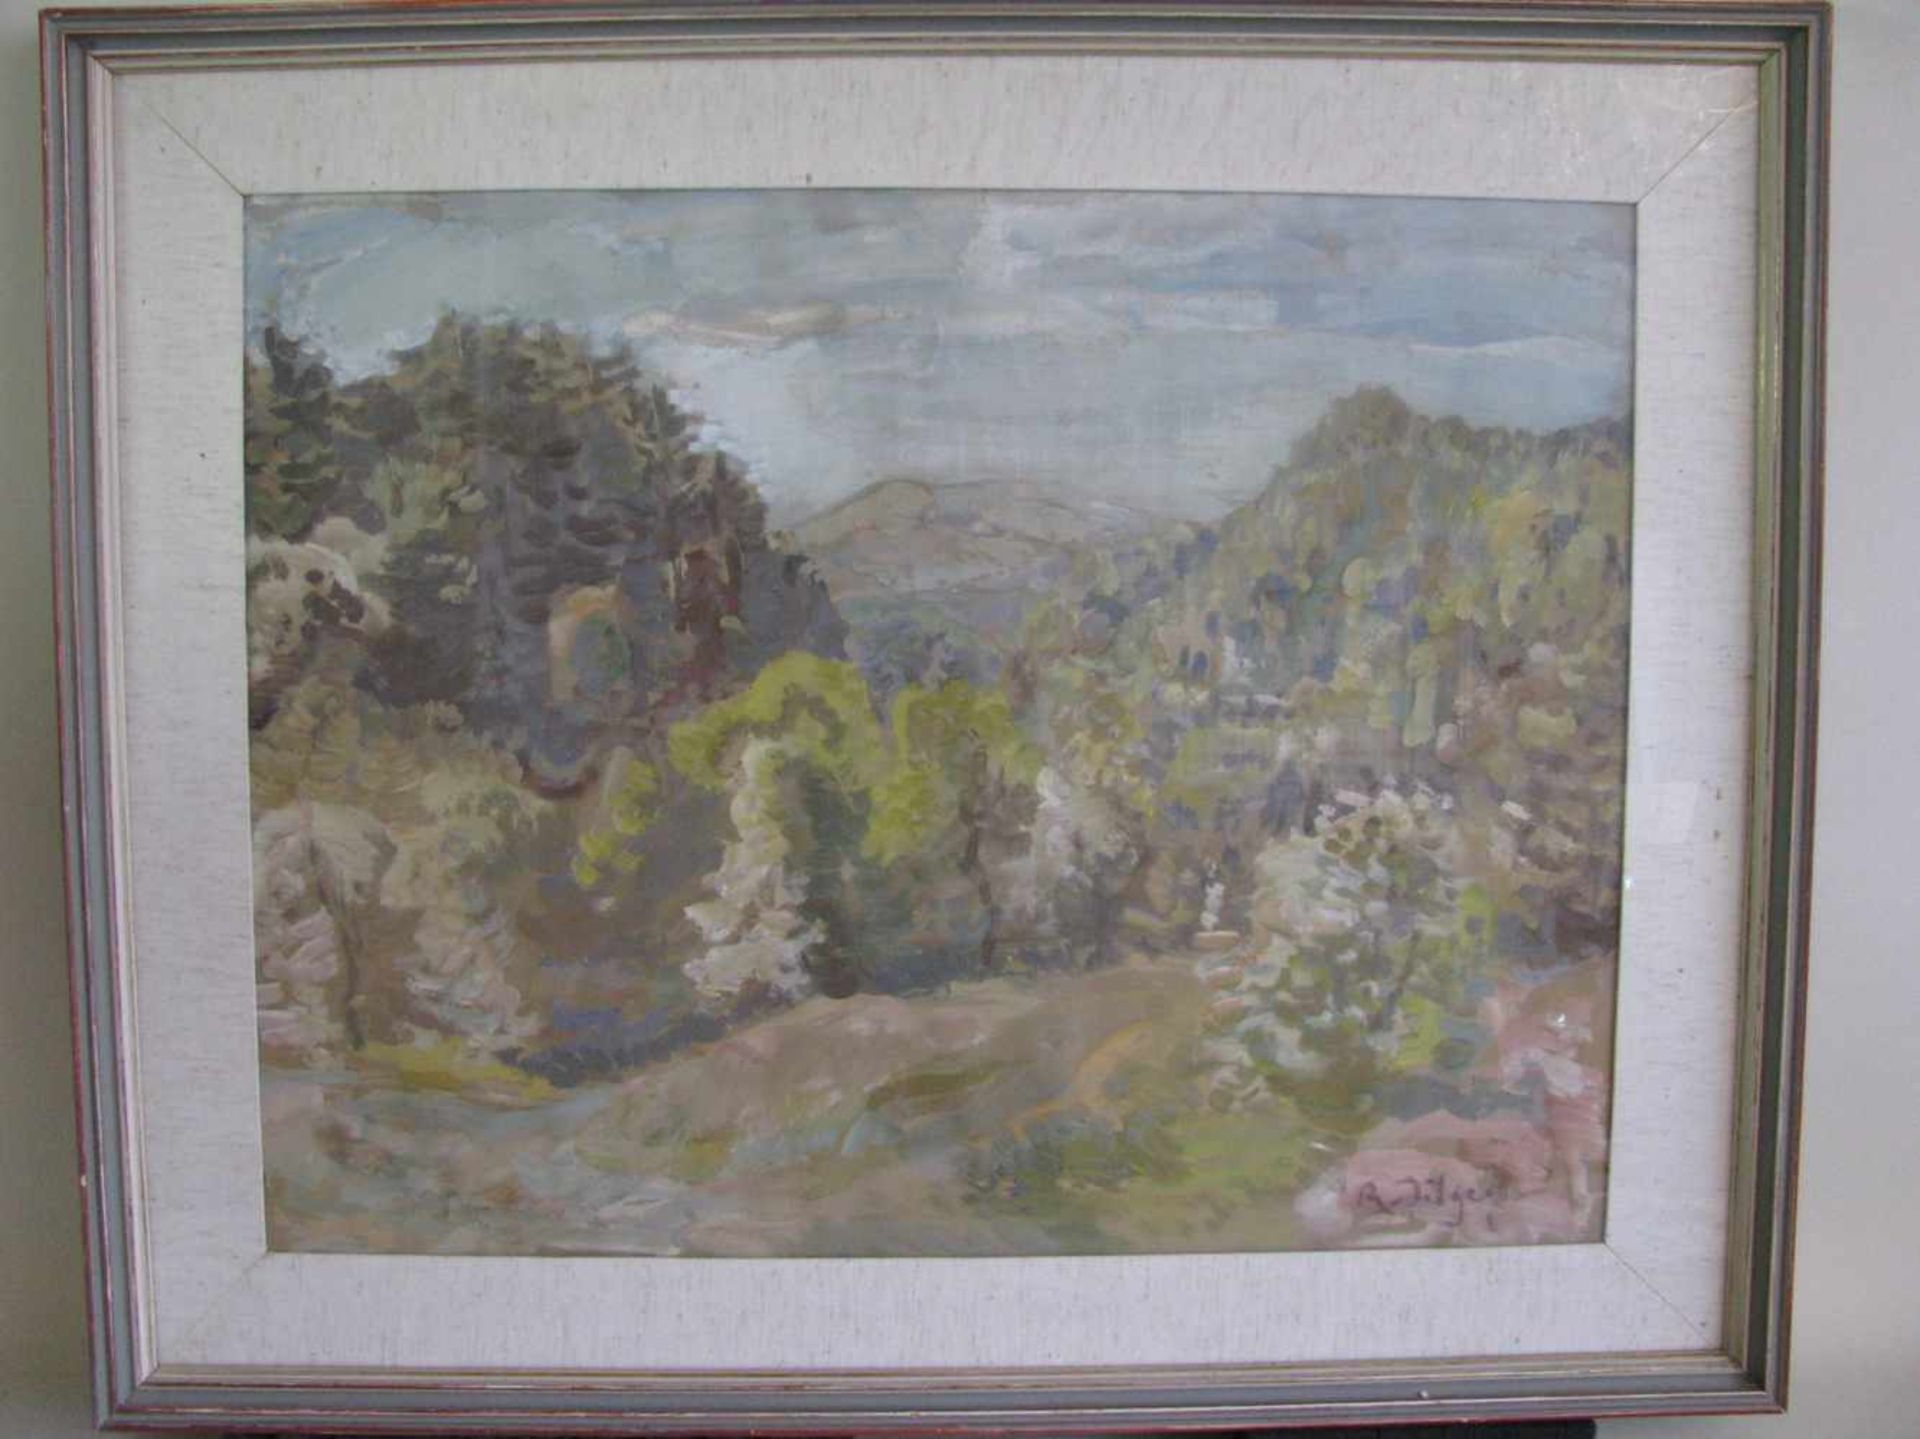 Dilger, Richard,1887 - 1973, Überlingen - Allensbach, deutscher Landschaftsmaler, "Sommerlicher Wald